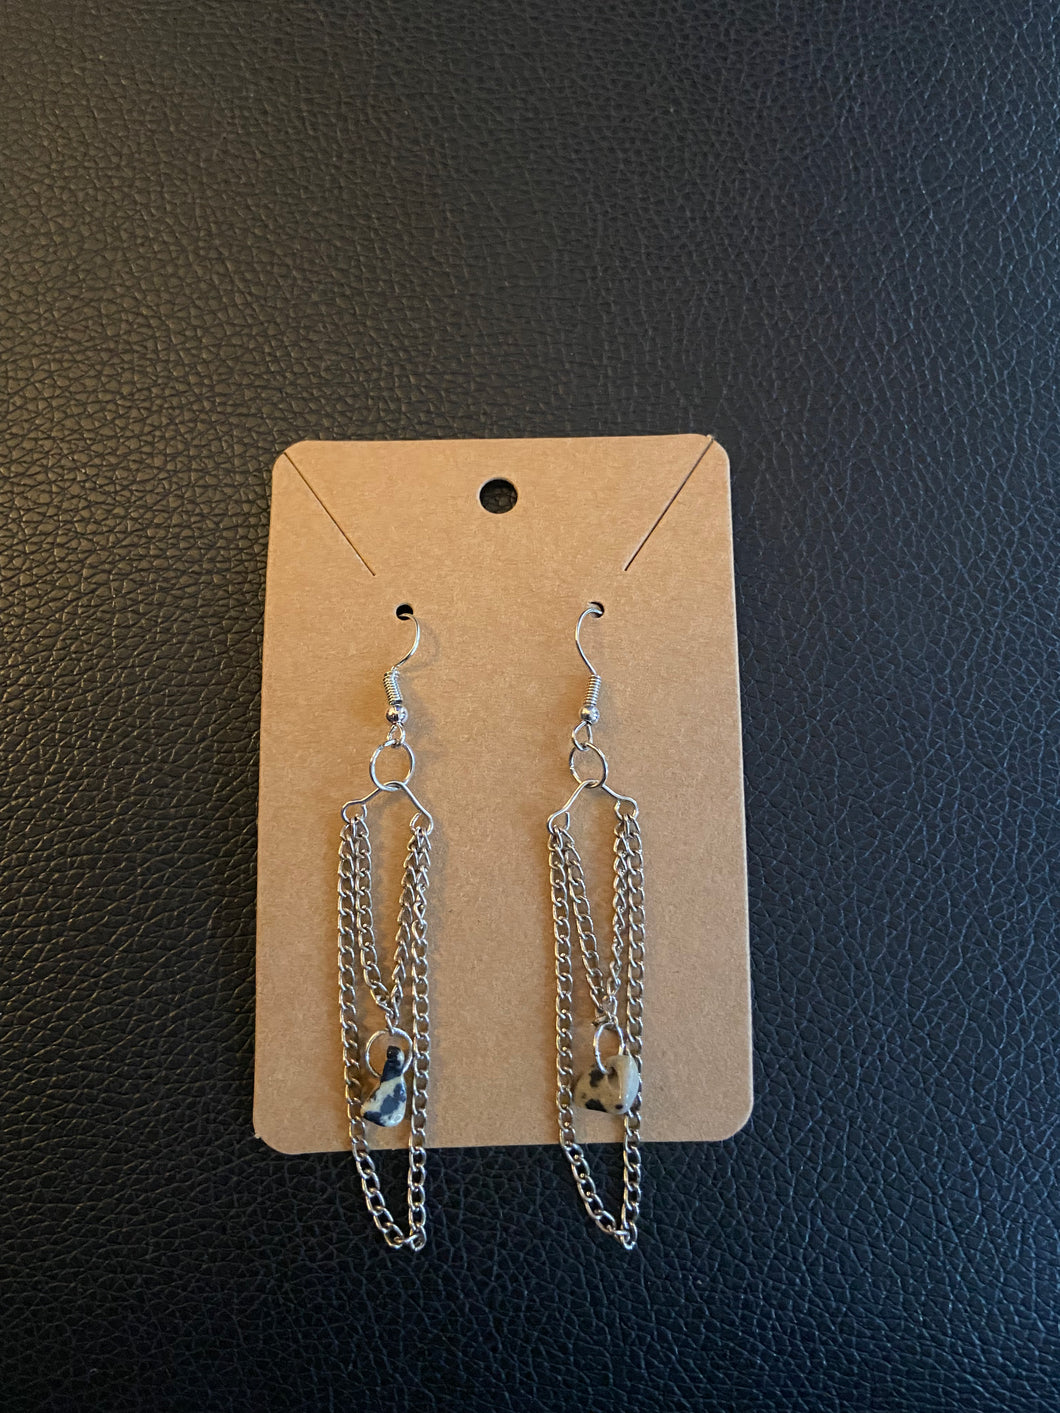 Droop chain earrings